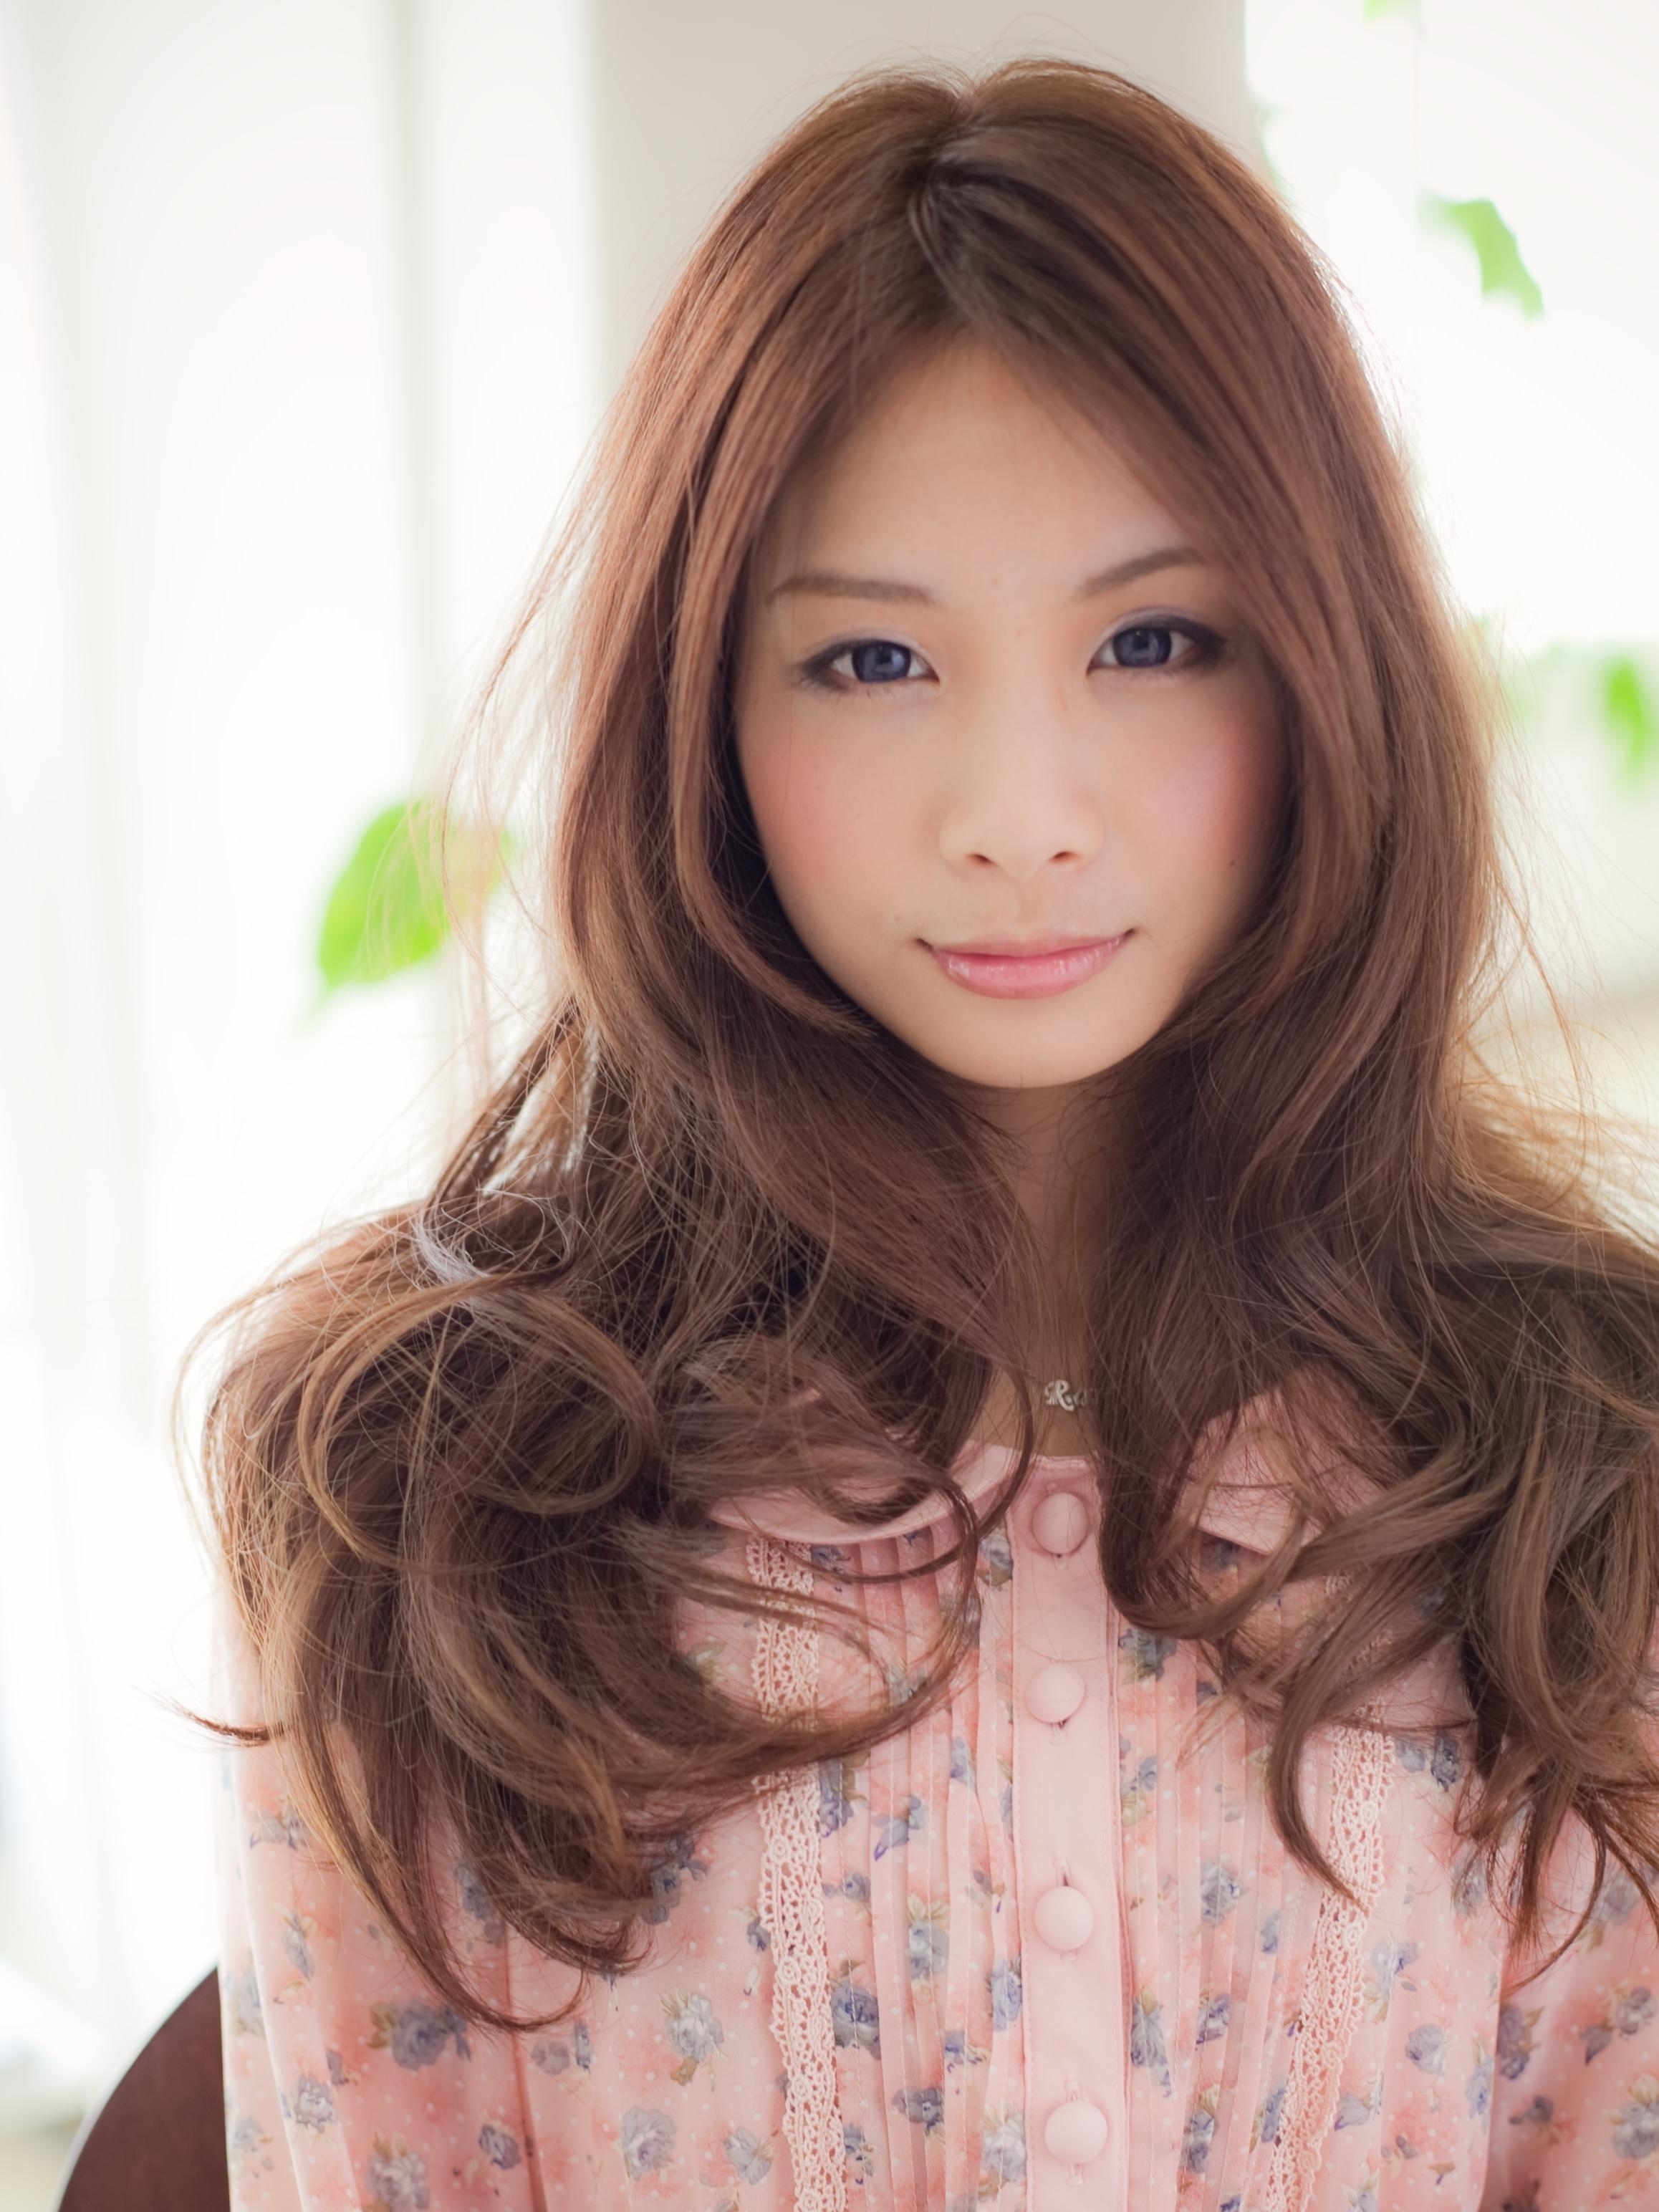 日本初 Mod S Hair メンズ専門サロンを2月6日上尾駅前にopen 株式会社ハンサムのプレスリリース